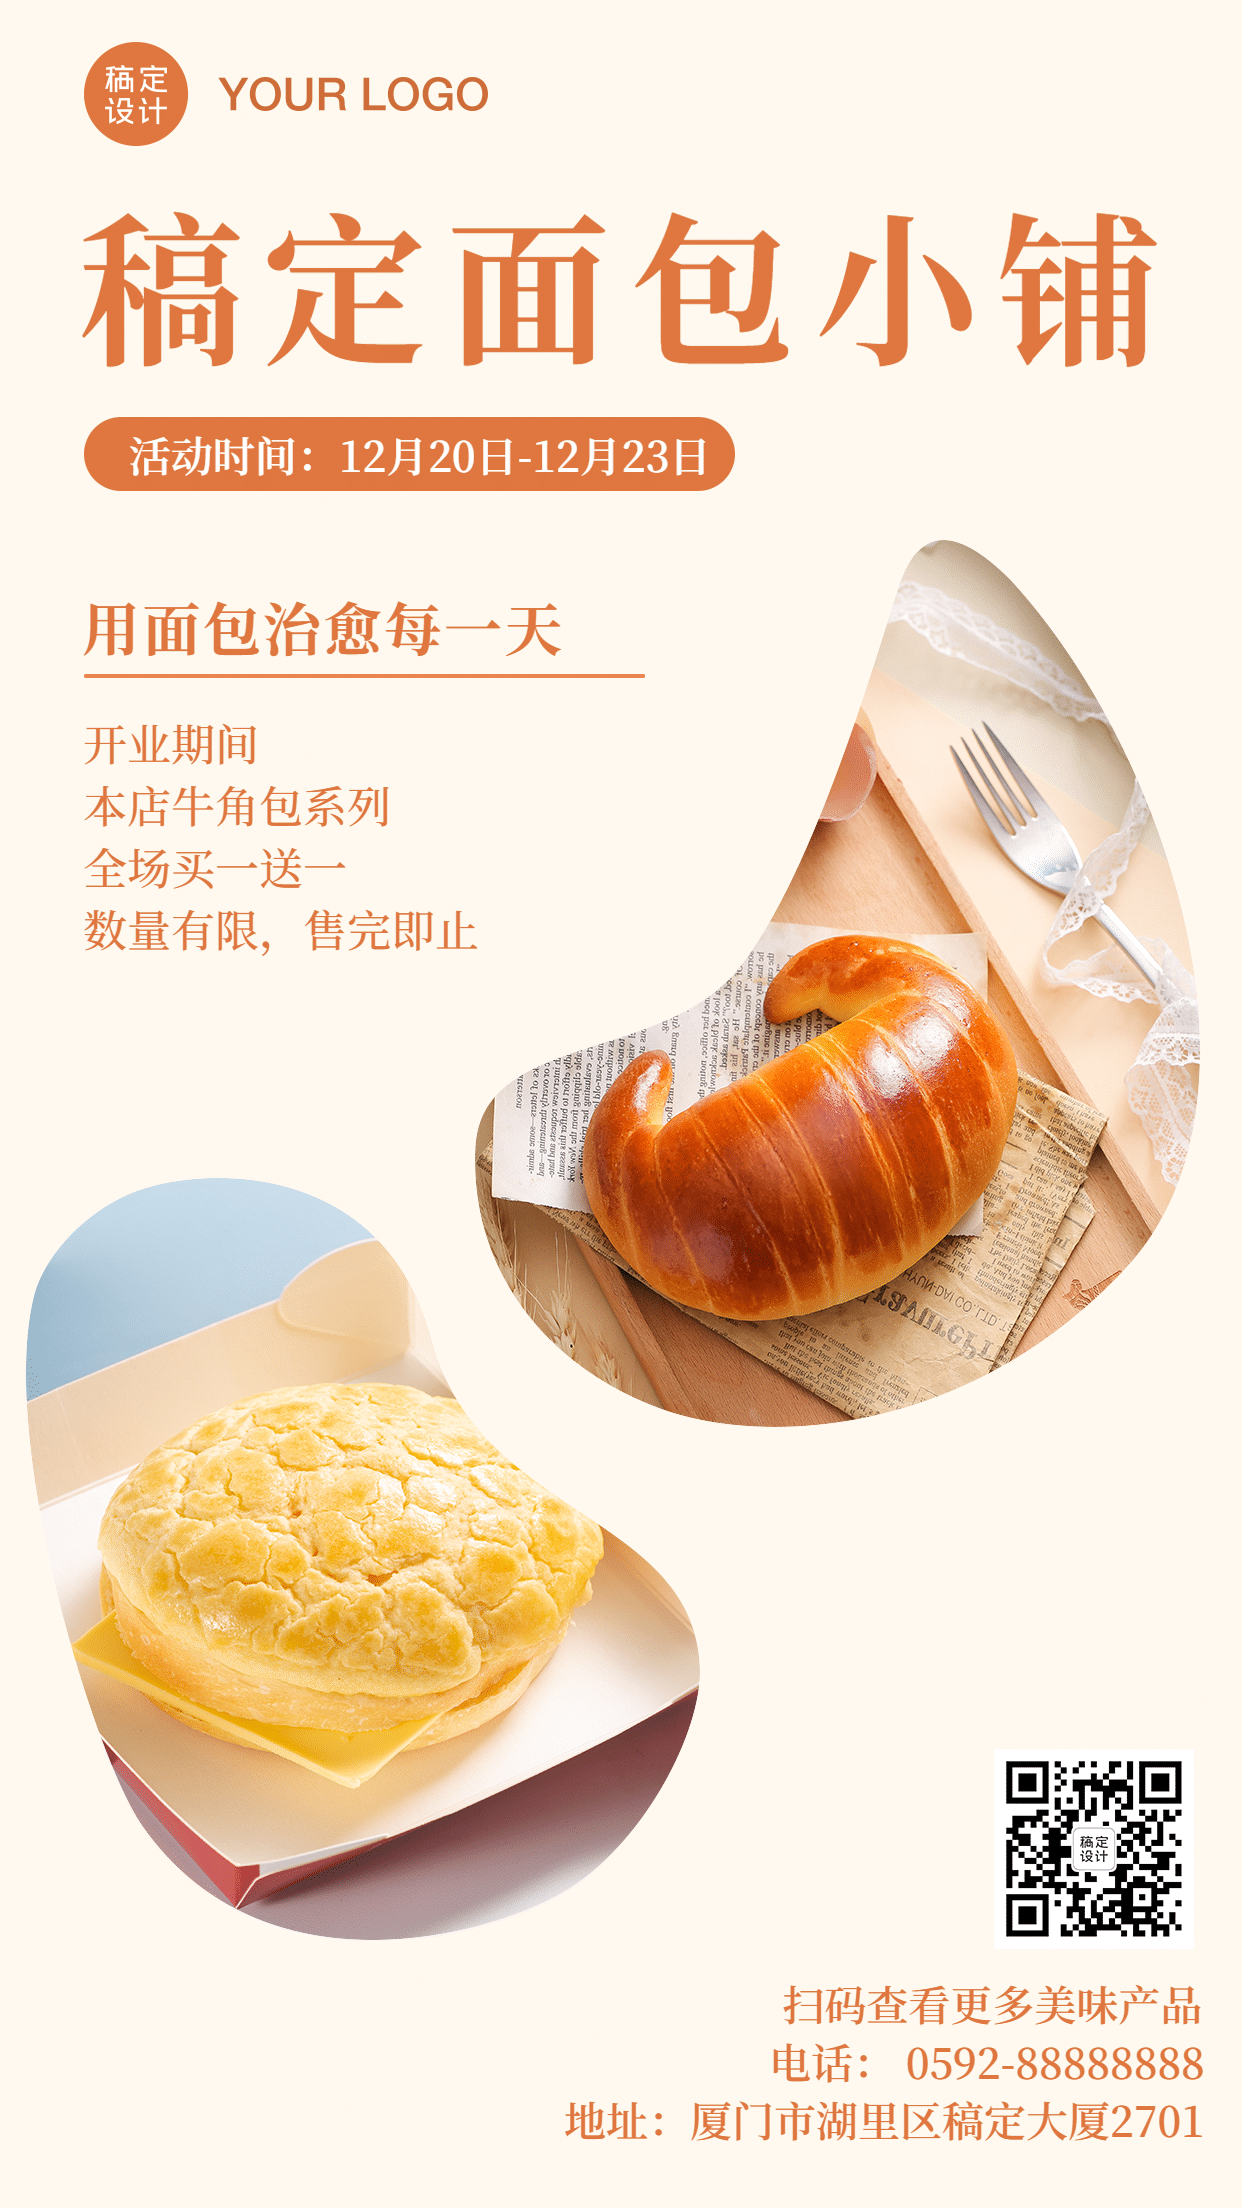 餐饮烘焙面包开业活动海报